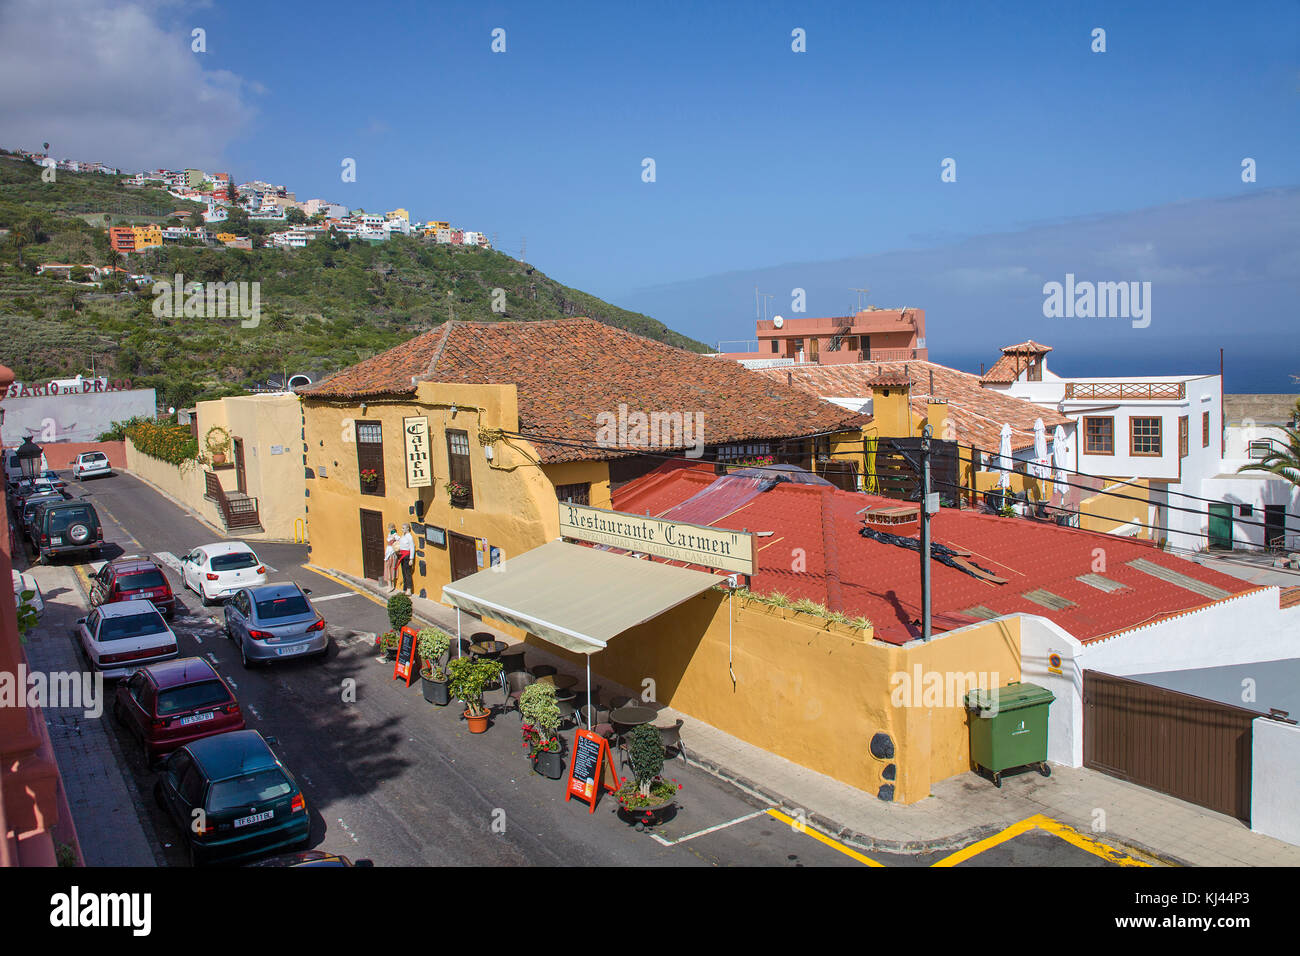 Restaurant an einer Straße, Icod de los Vinos, Teneriffa, Kanarische Inseln, Spanien Stockfoto